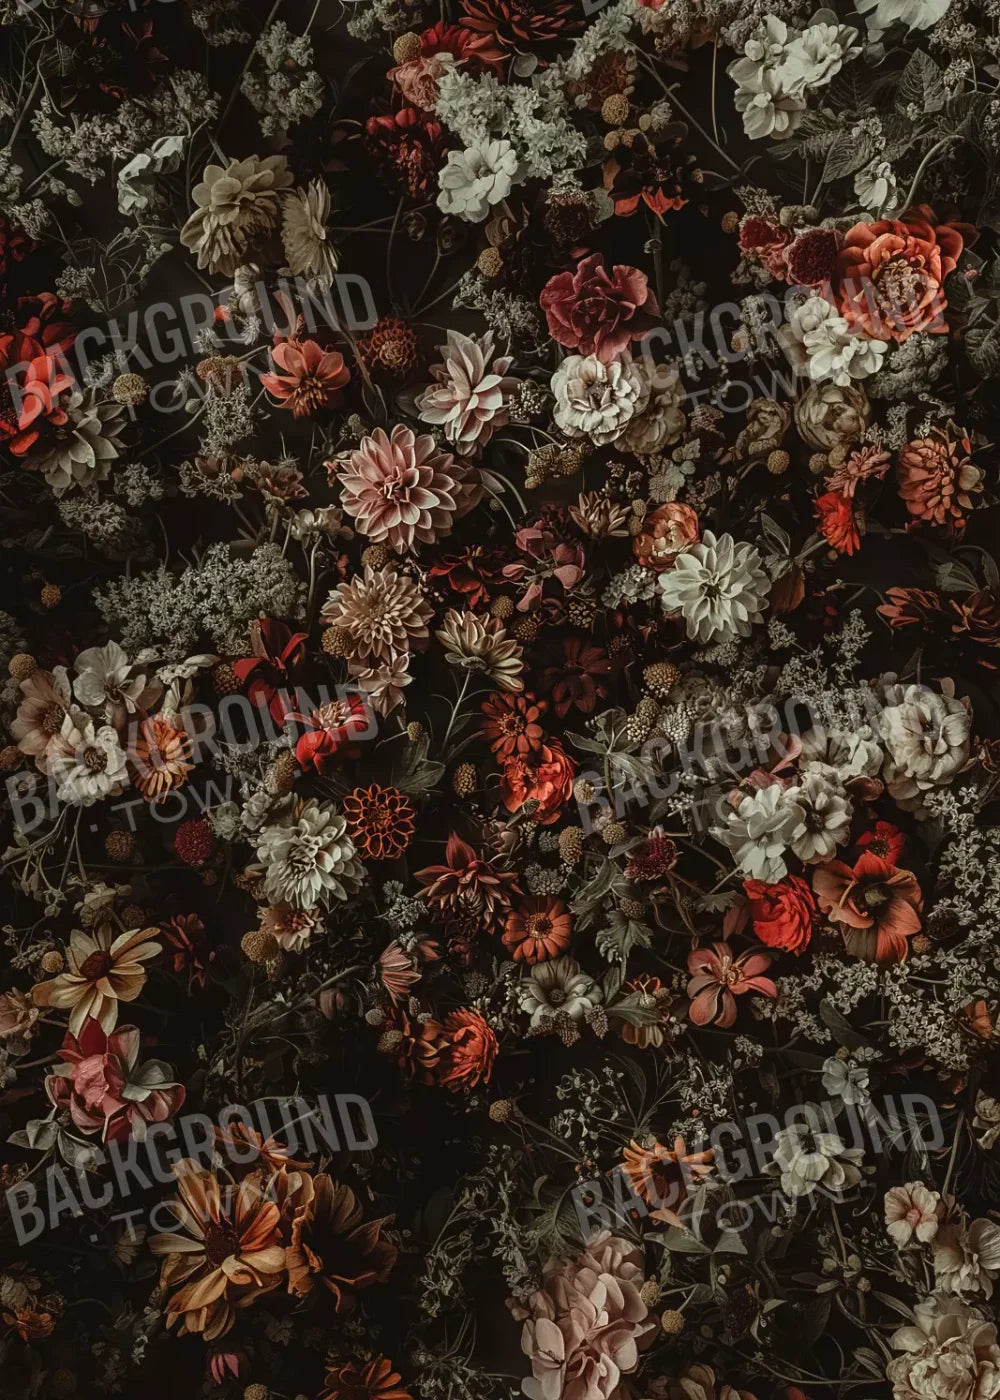 Floral Fantasy Warm 5’X7’ Ultracloth (60 X 84 Inch) Backdrop